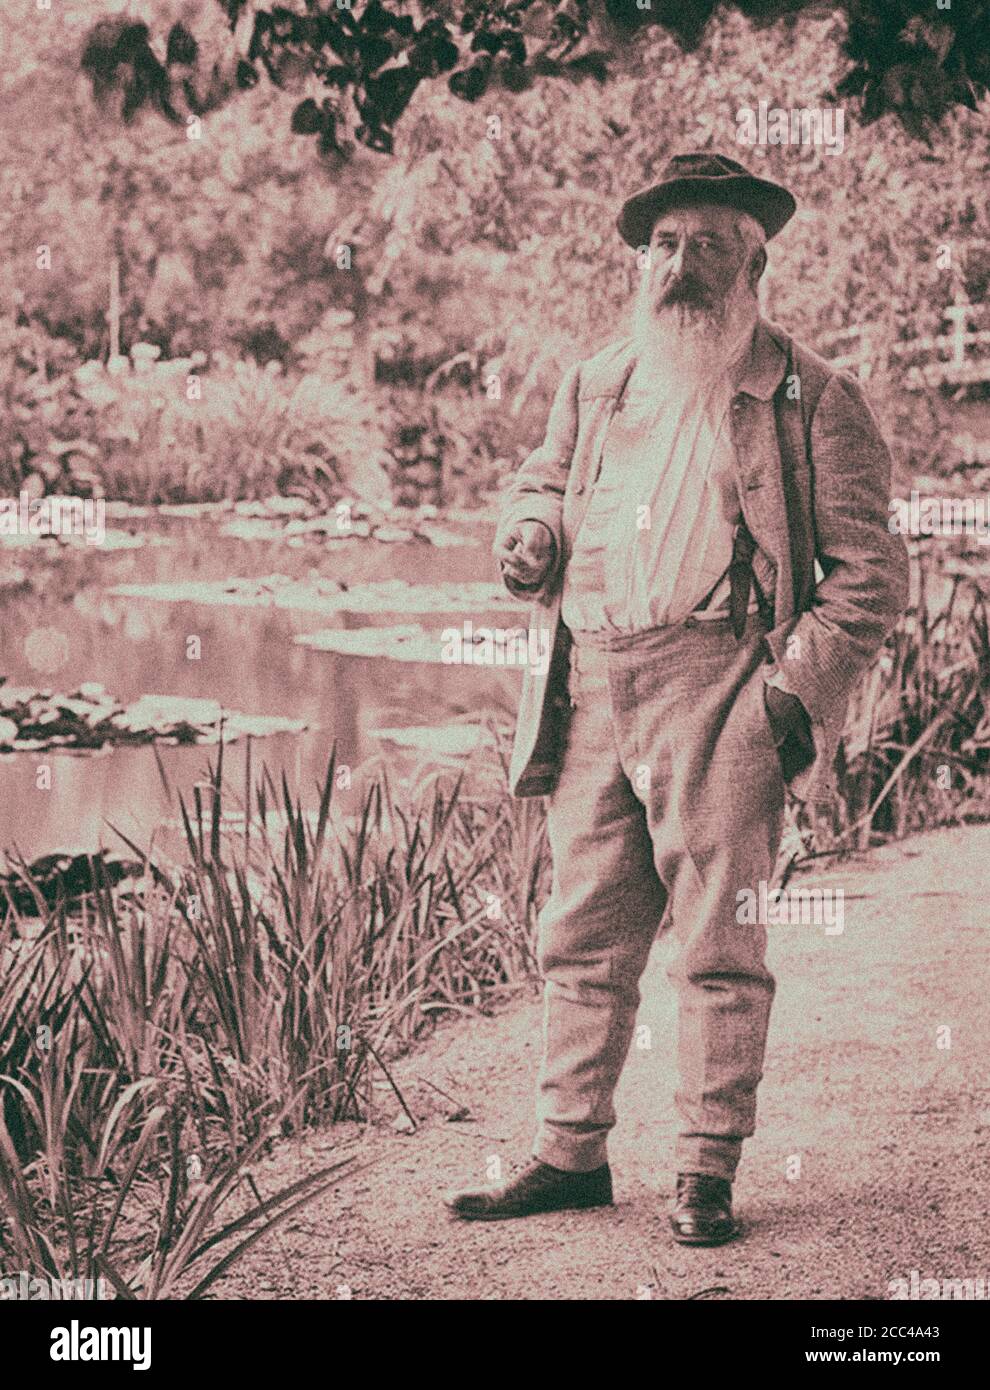 Oscar-Claude Monet (14 novembre 1840 – 5 décembre 1926) est un peintre français, un fondateur de la peinture impressionniste française et le plus consistant et p Banque D'Images